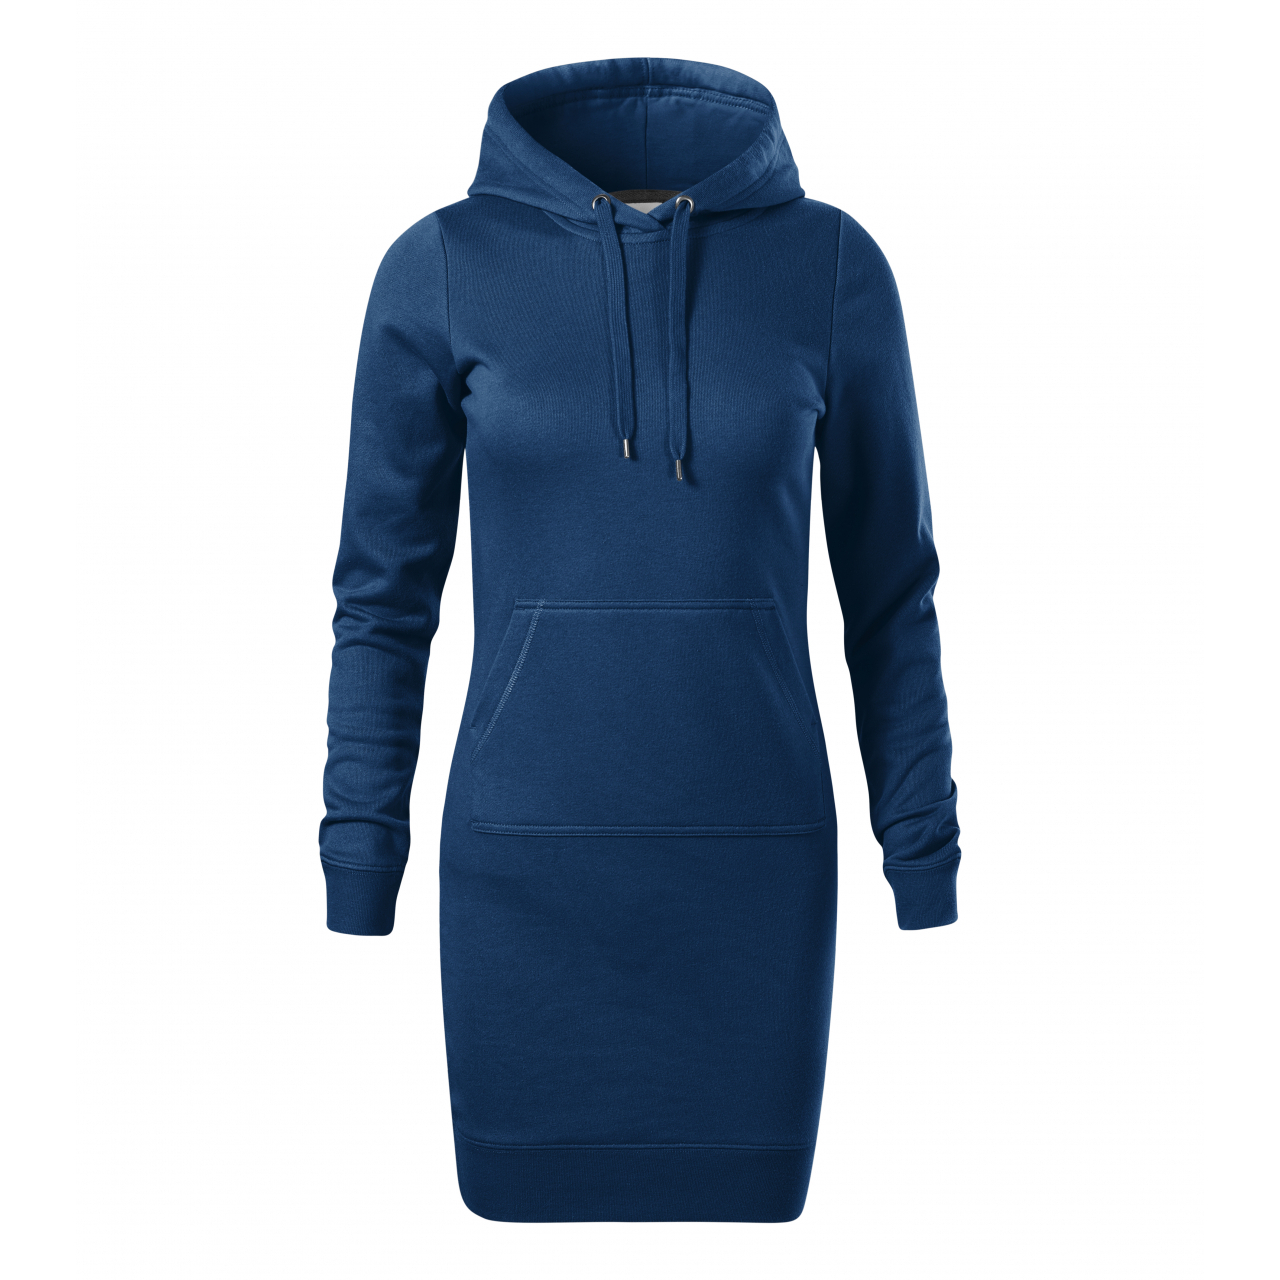 Šaty dámské Malfini Snap - tmavě modré, S